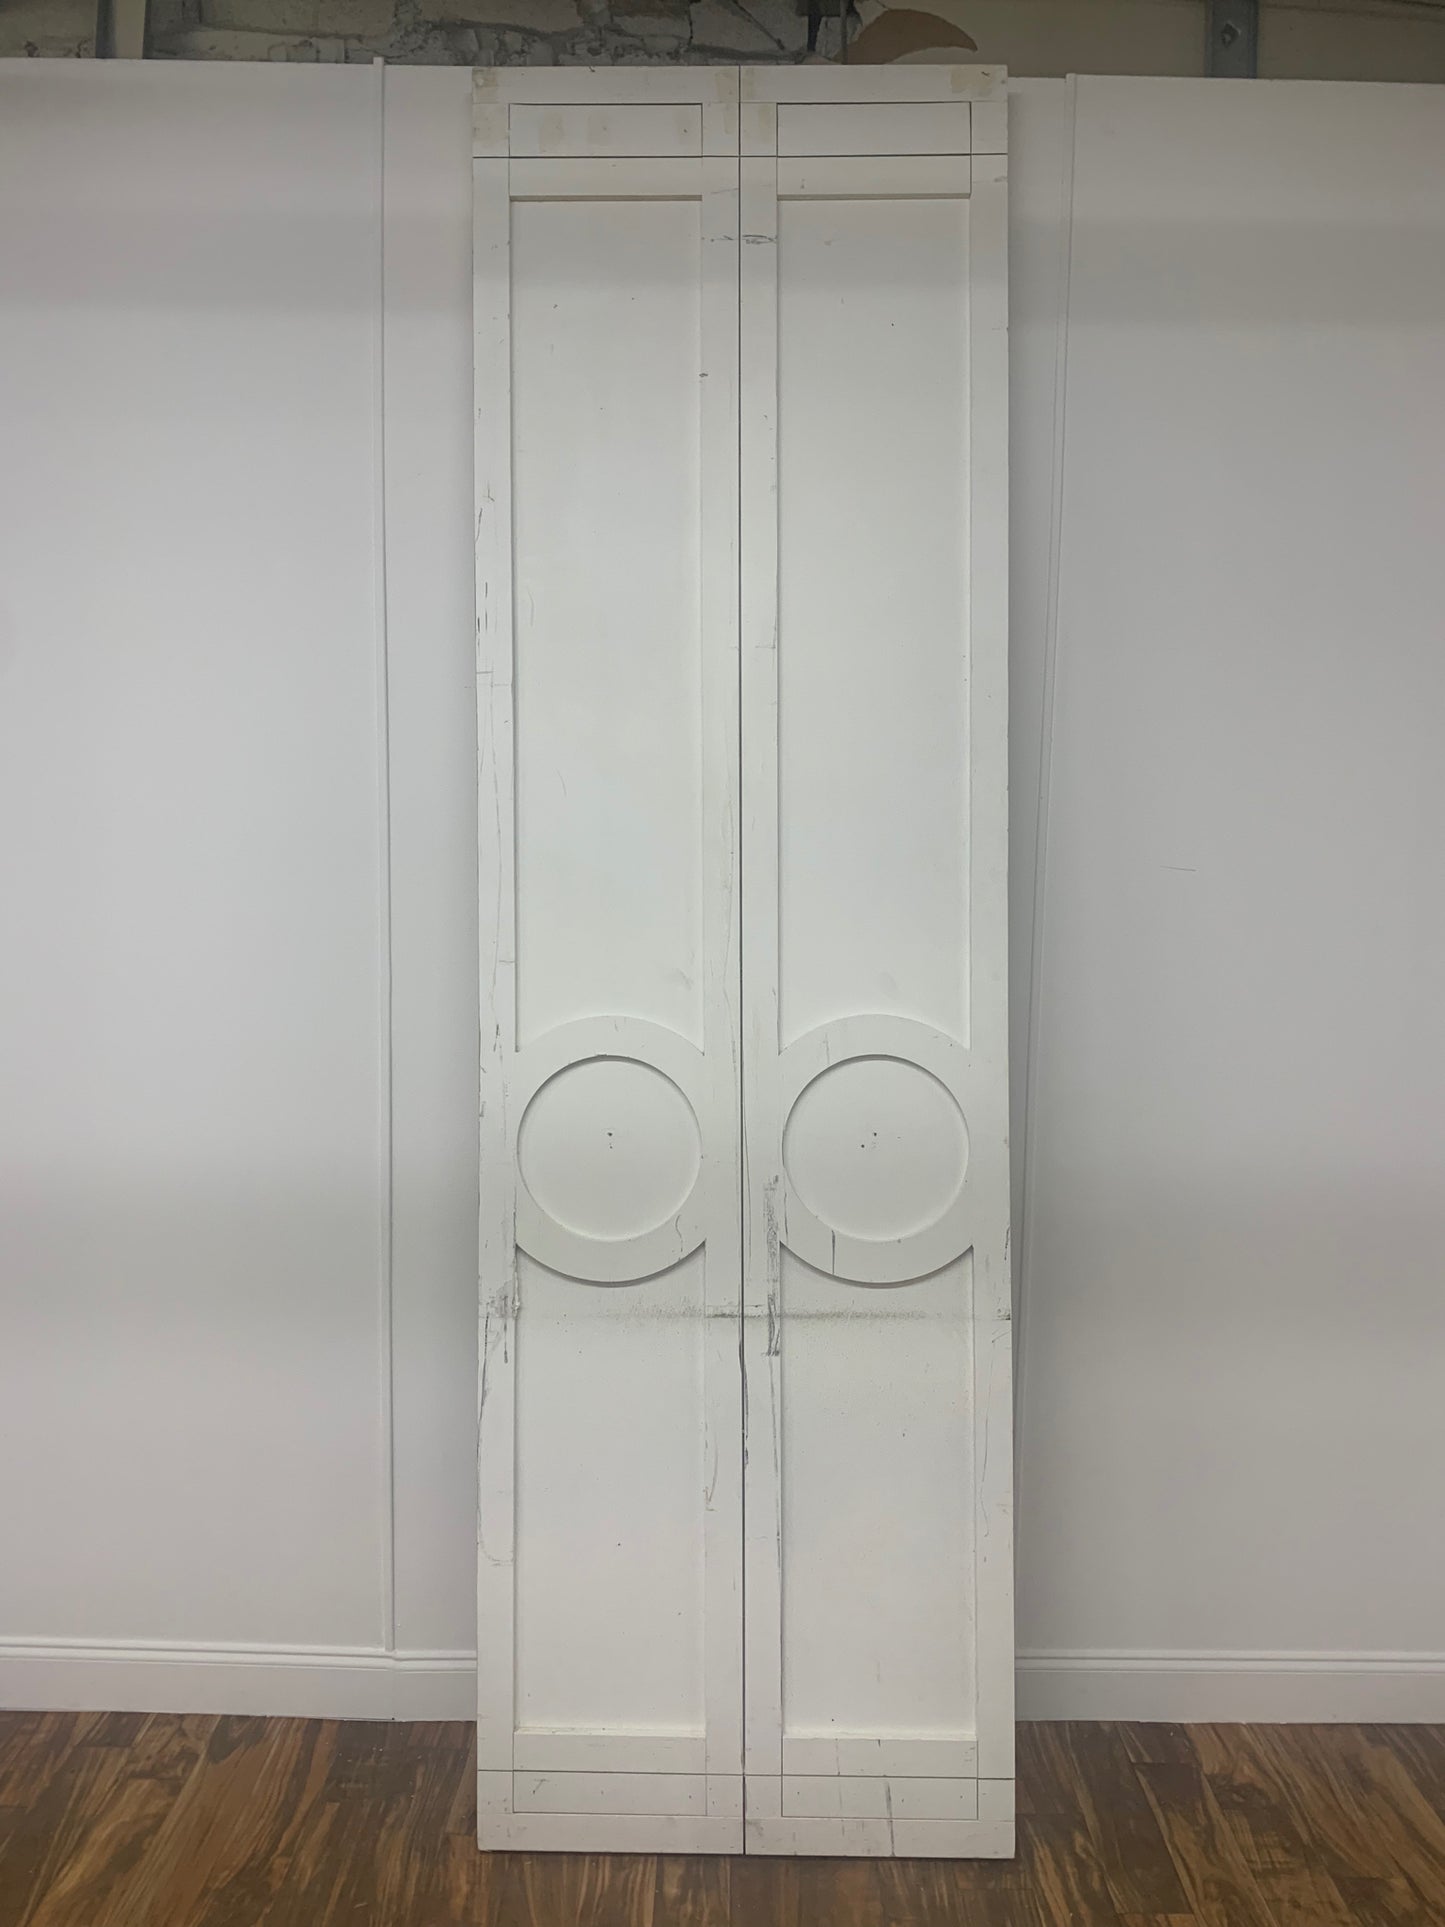 GIANT CLOSET DOUBLE DOOR WITH INLAY DESIGN